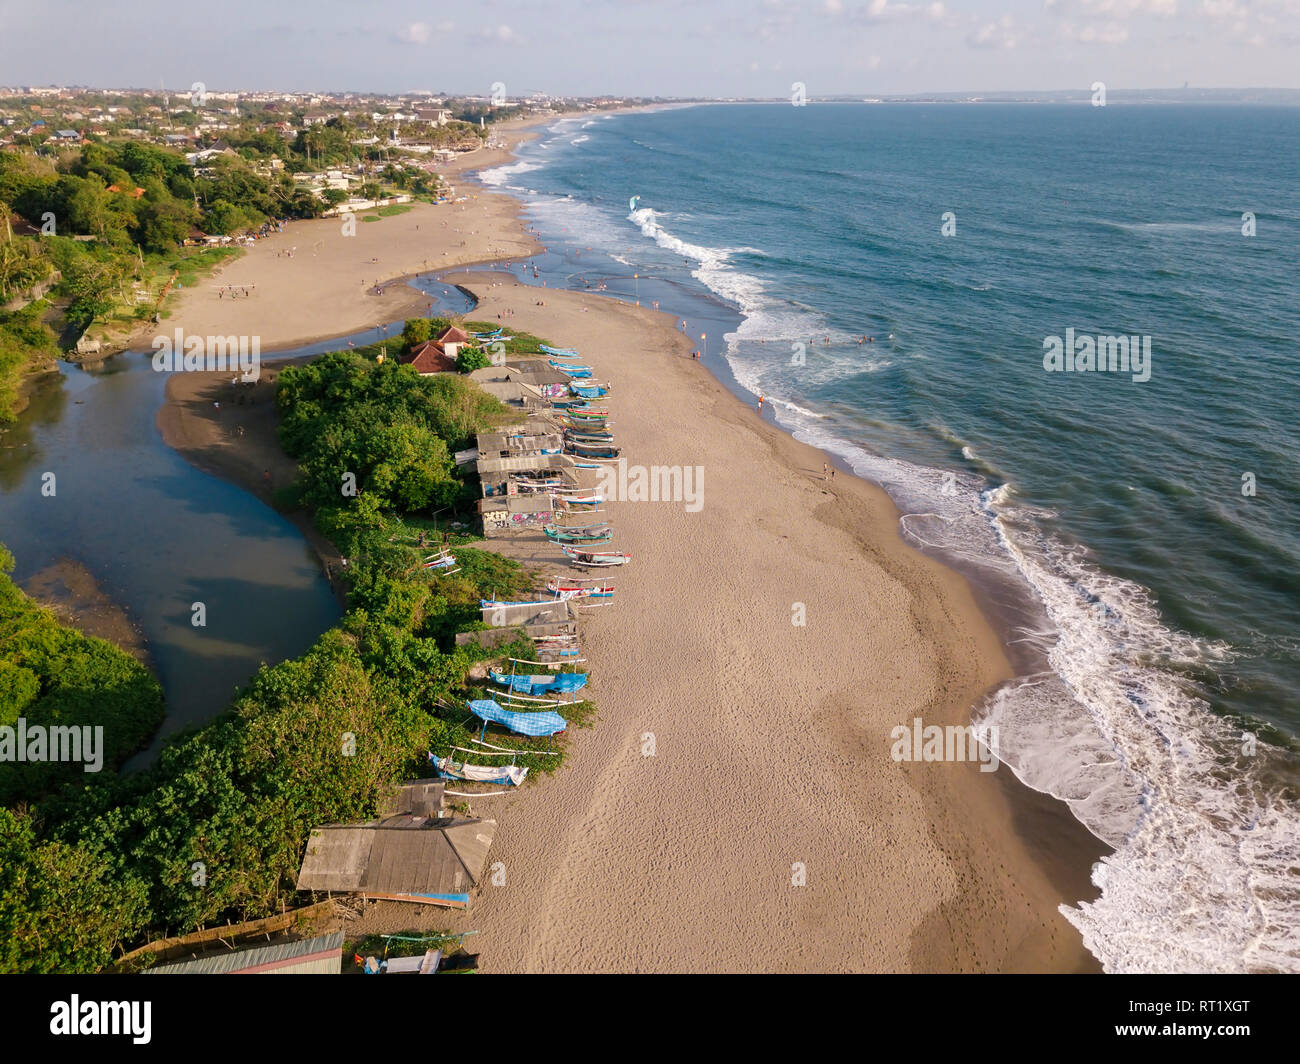 Indonesia, Bali, Aerial view of Berawa beach Stock Photo - Alamy